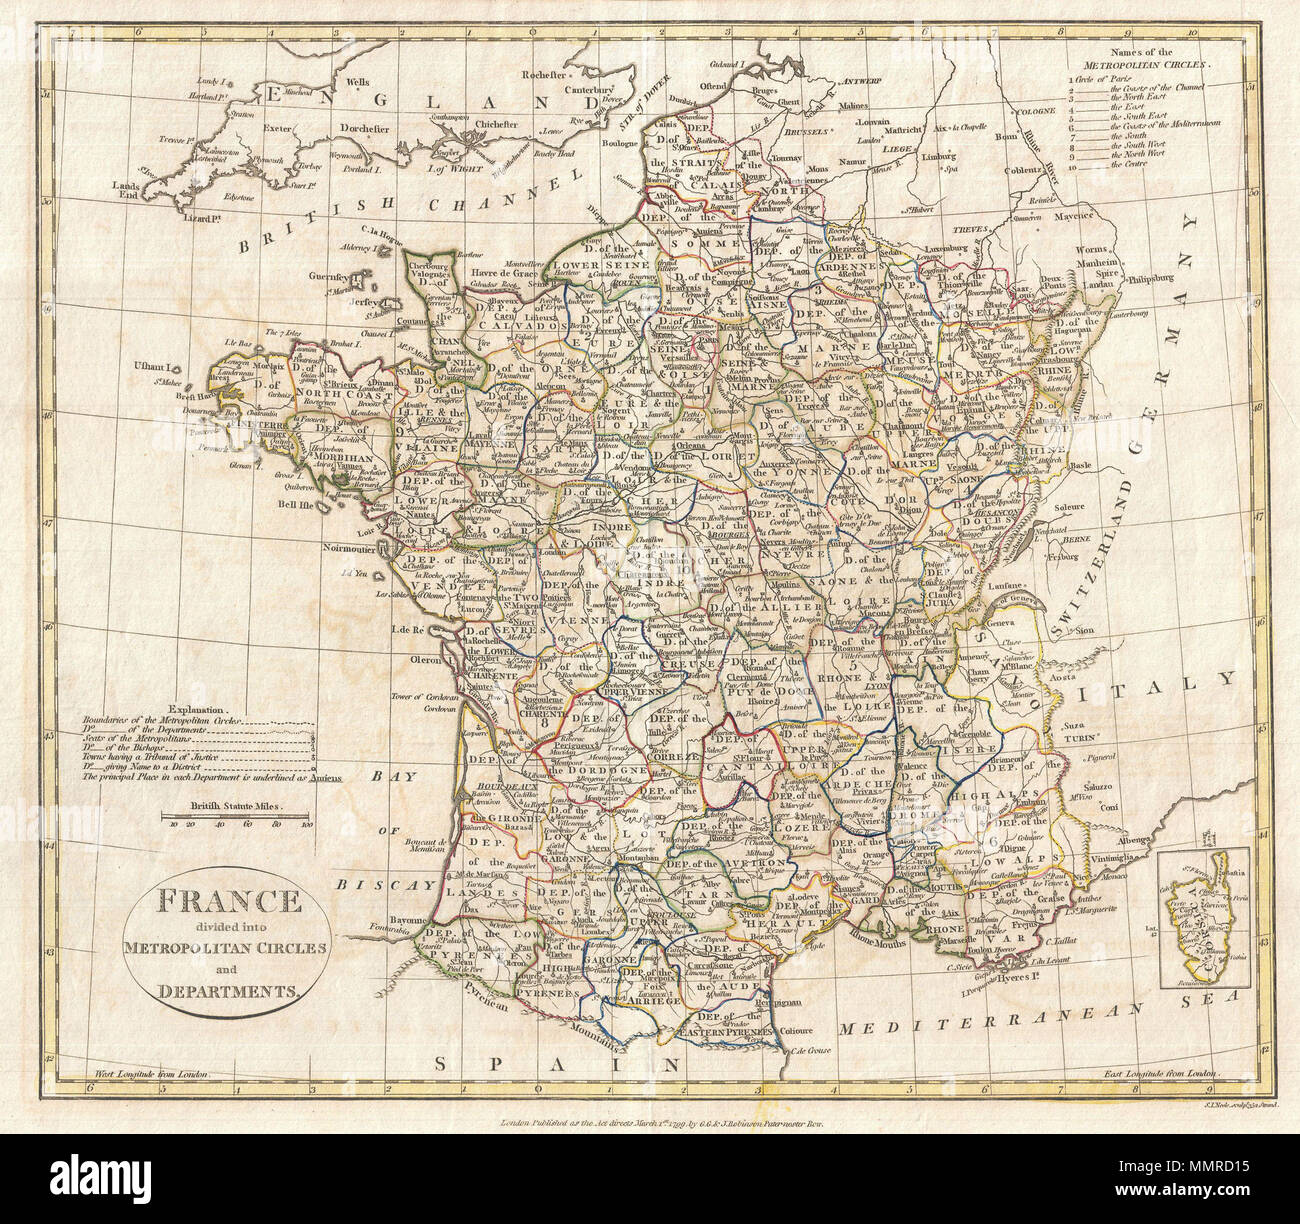 Inglés: Una multa 1799 Mapa de Francia dividida en círculos metropolitana y  Departamentos por el inglés Map Publisher Clemente Cruttwell. El  departamento francés sistema fue establecido el 4 de marzo de